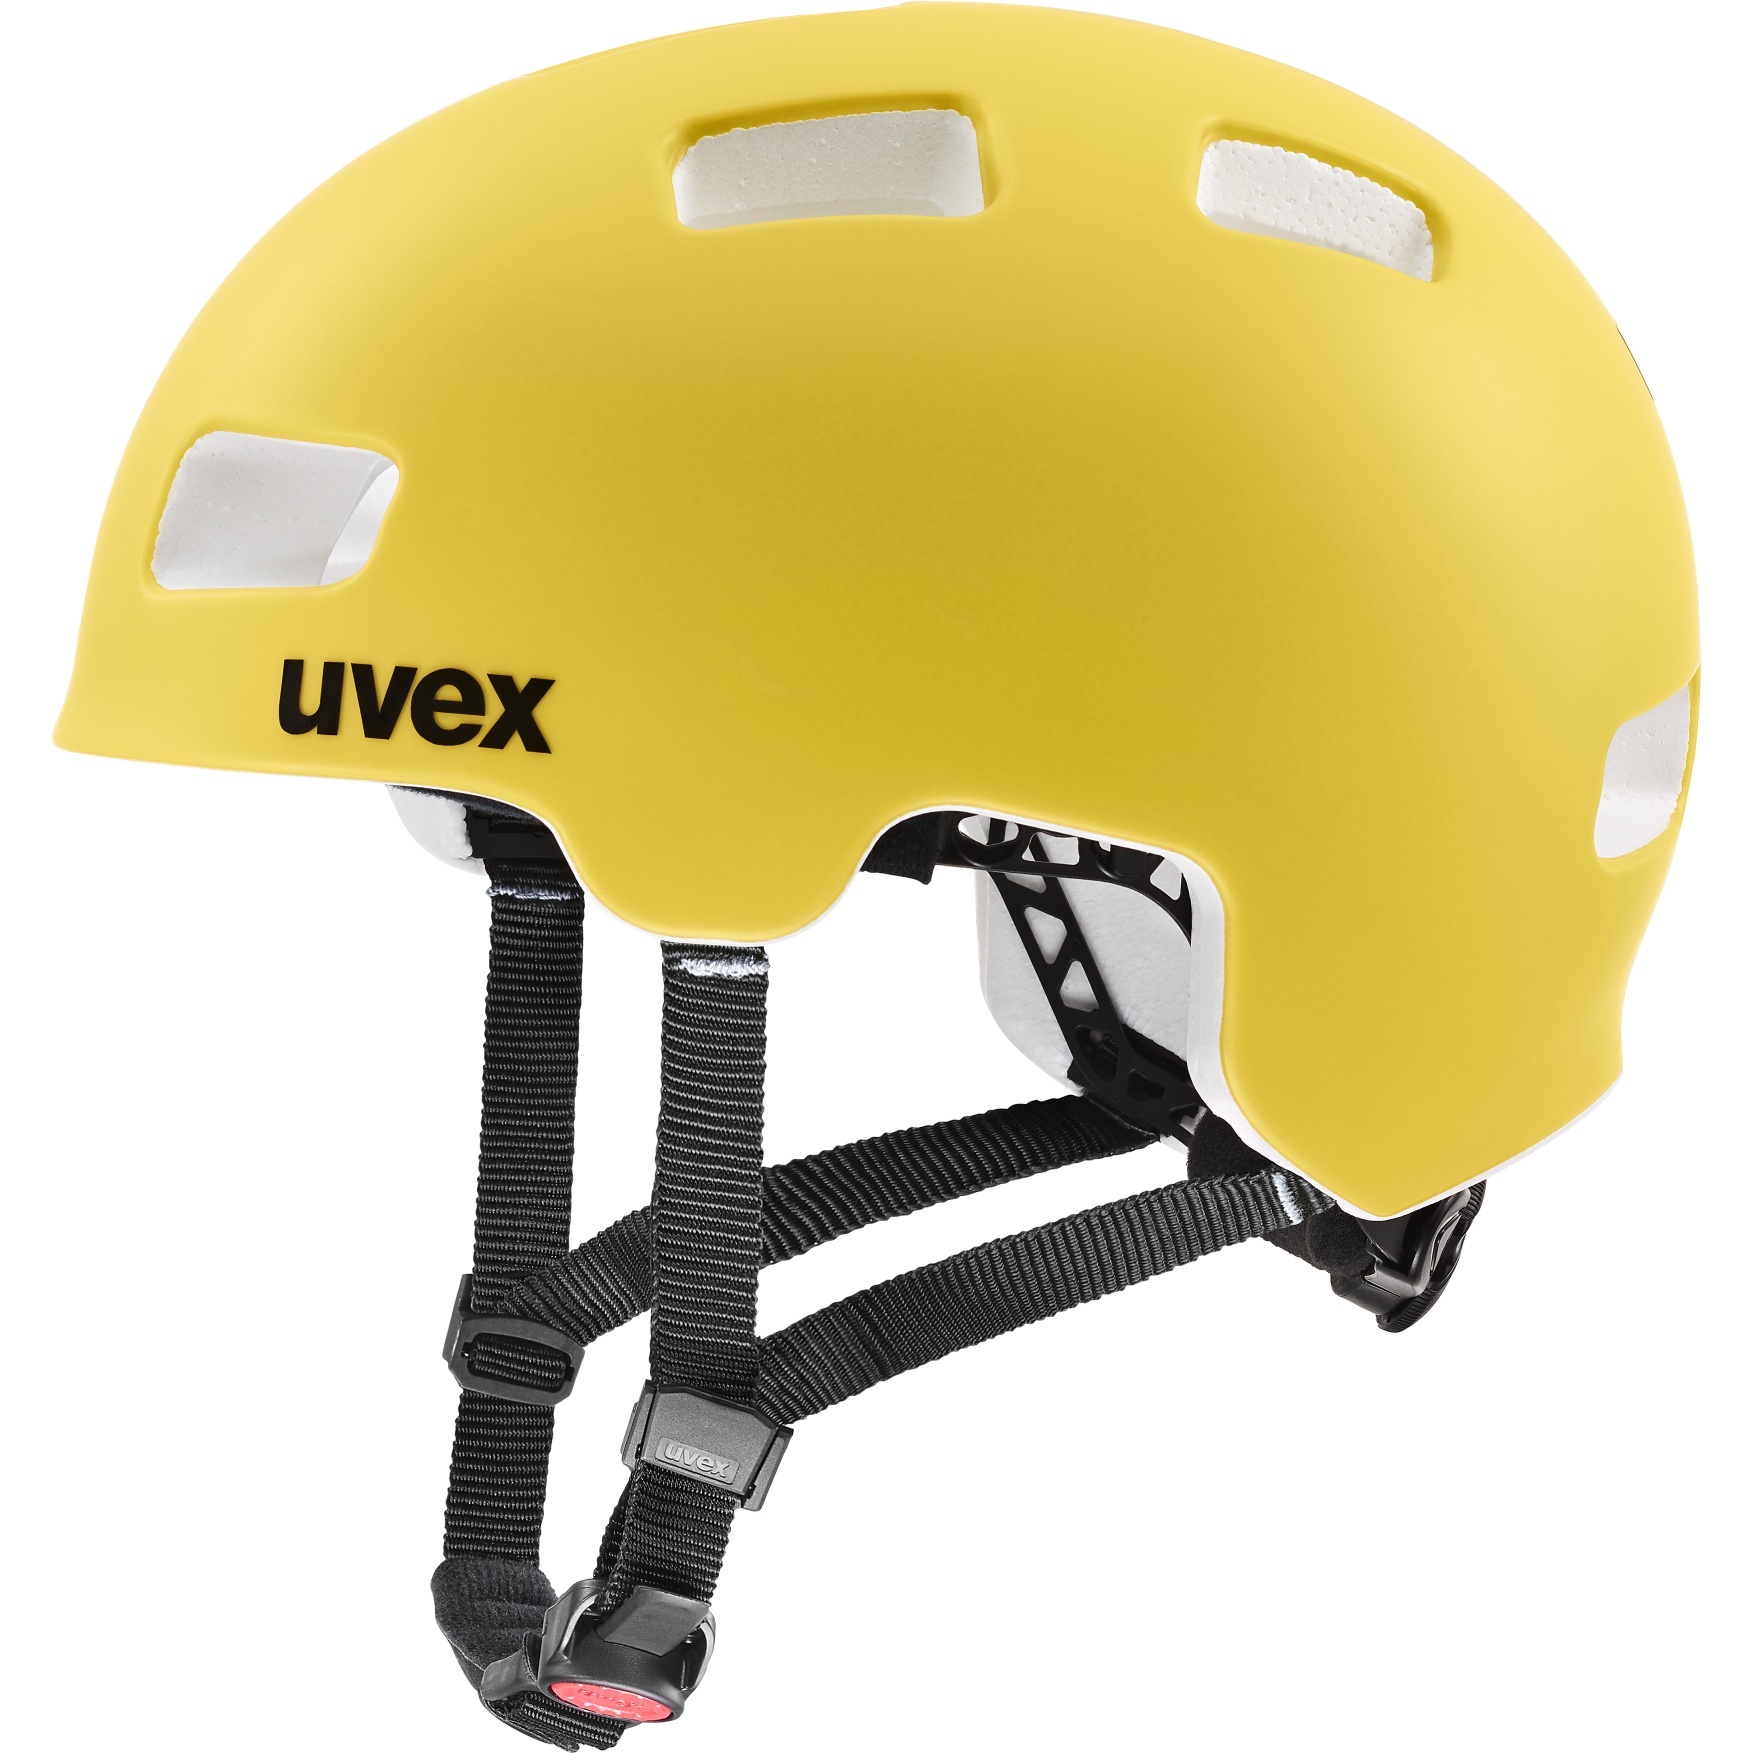 Picture of Uvex hlmt 4 cc Kids Helmet - sunbee matt